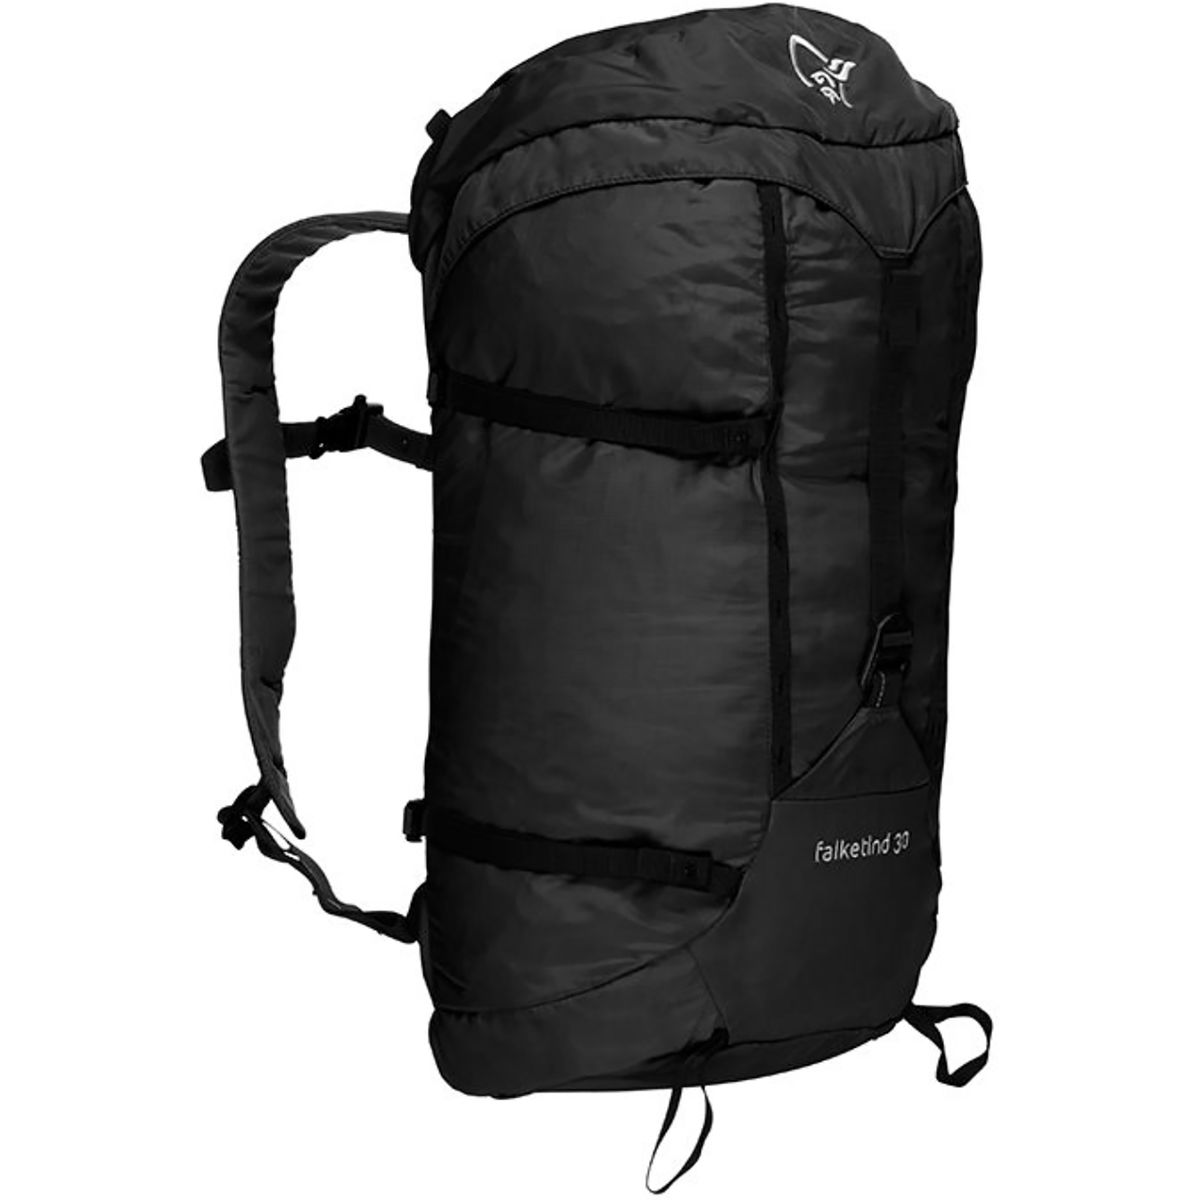 Norrona Falketind 35L Backpack - Hike & Camp